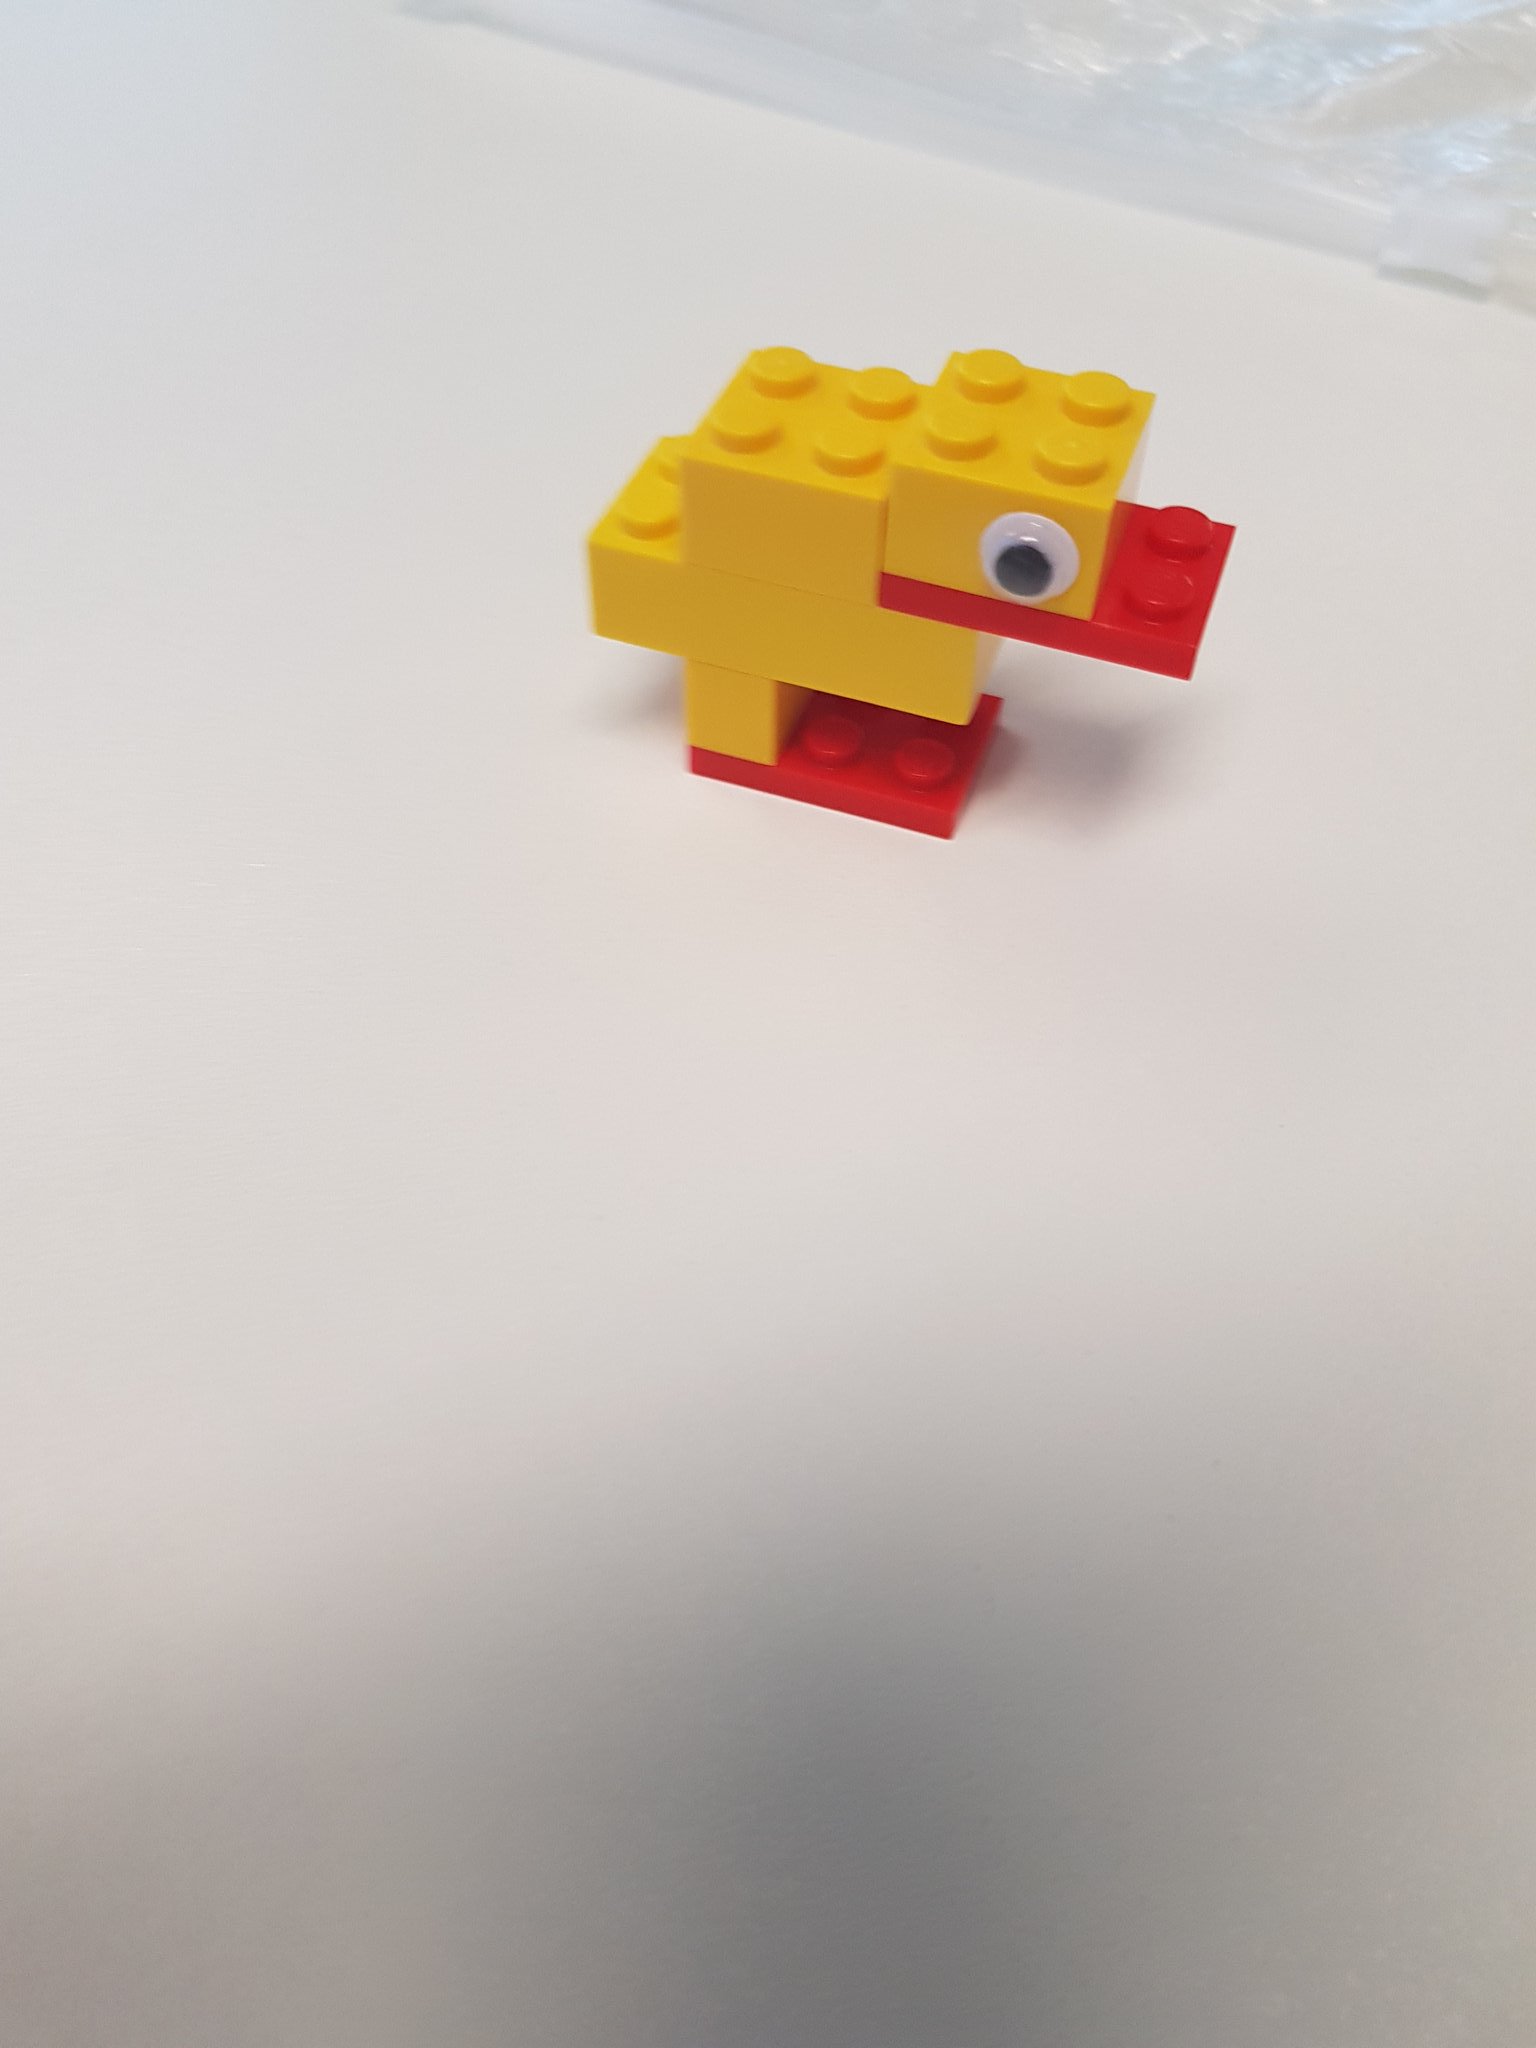 #SocMedHE17 here's my daftie duck https://t.co/cwYDAab0k5